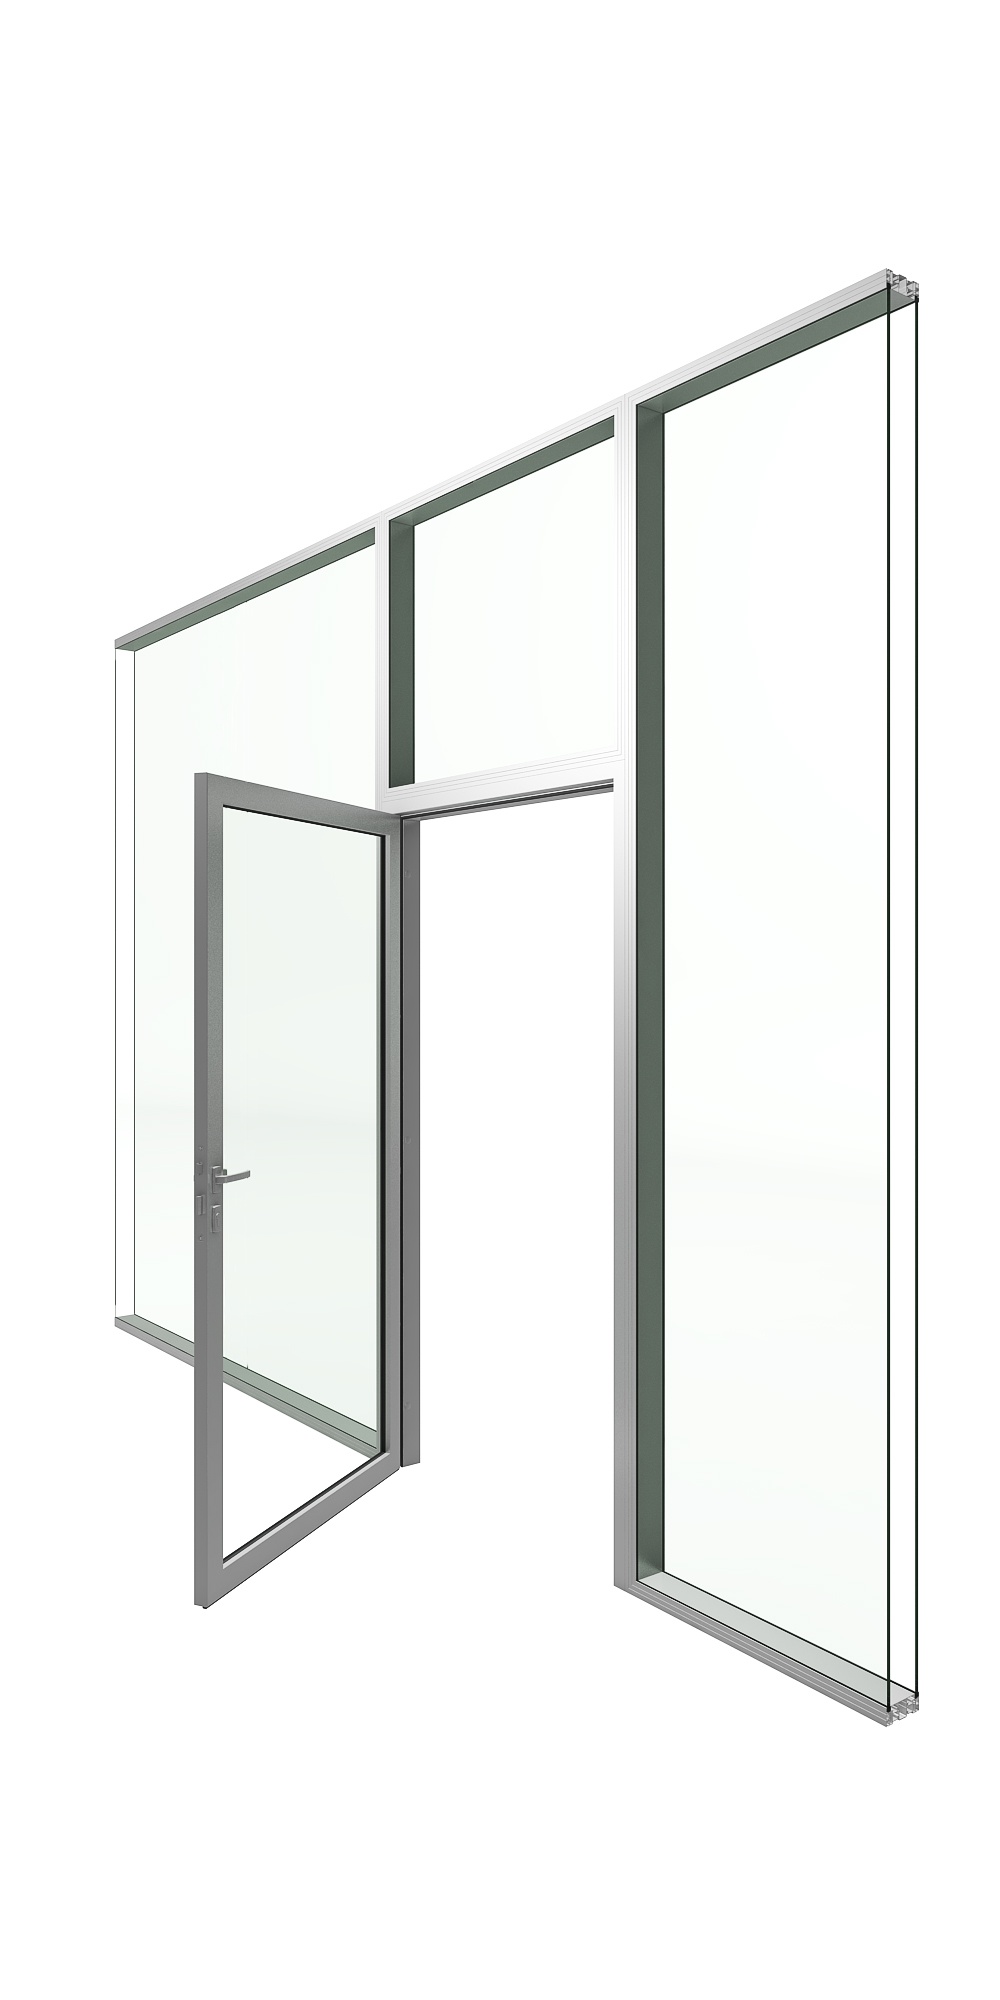 drzwi szklane w ramie aluminiowej, opcja próg opadający, zawiasy ukryte, zamek klasyczny